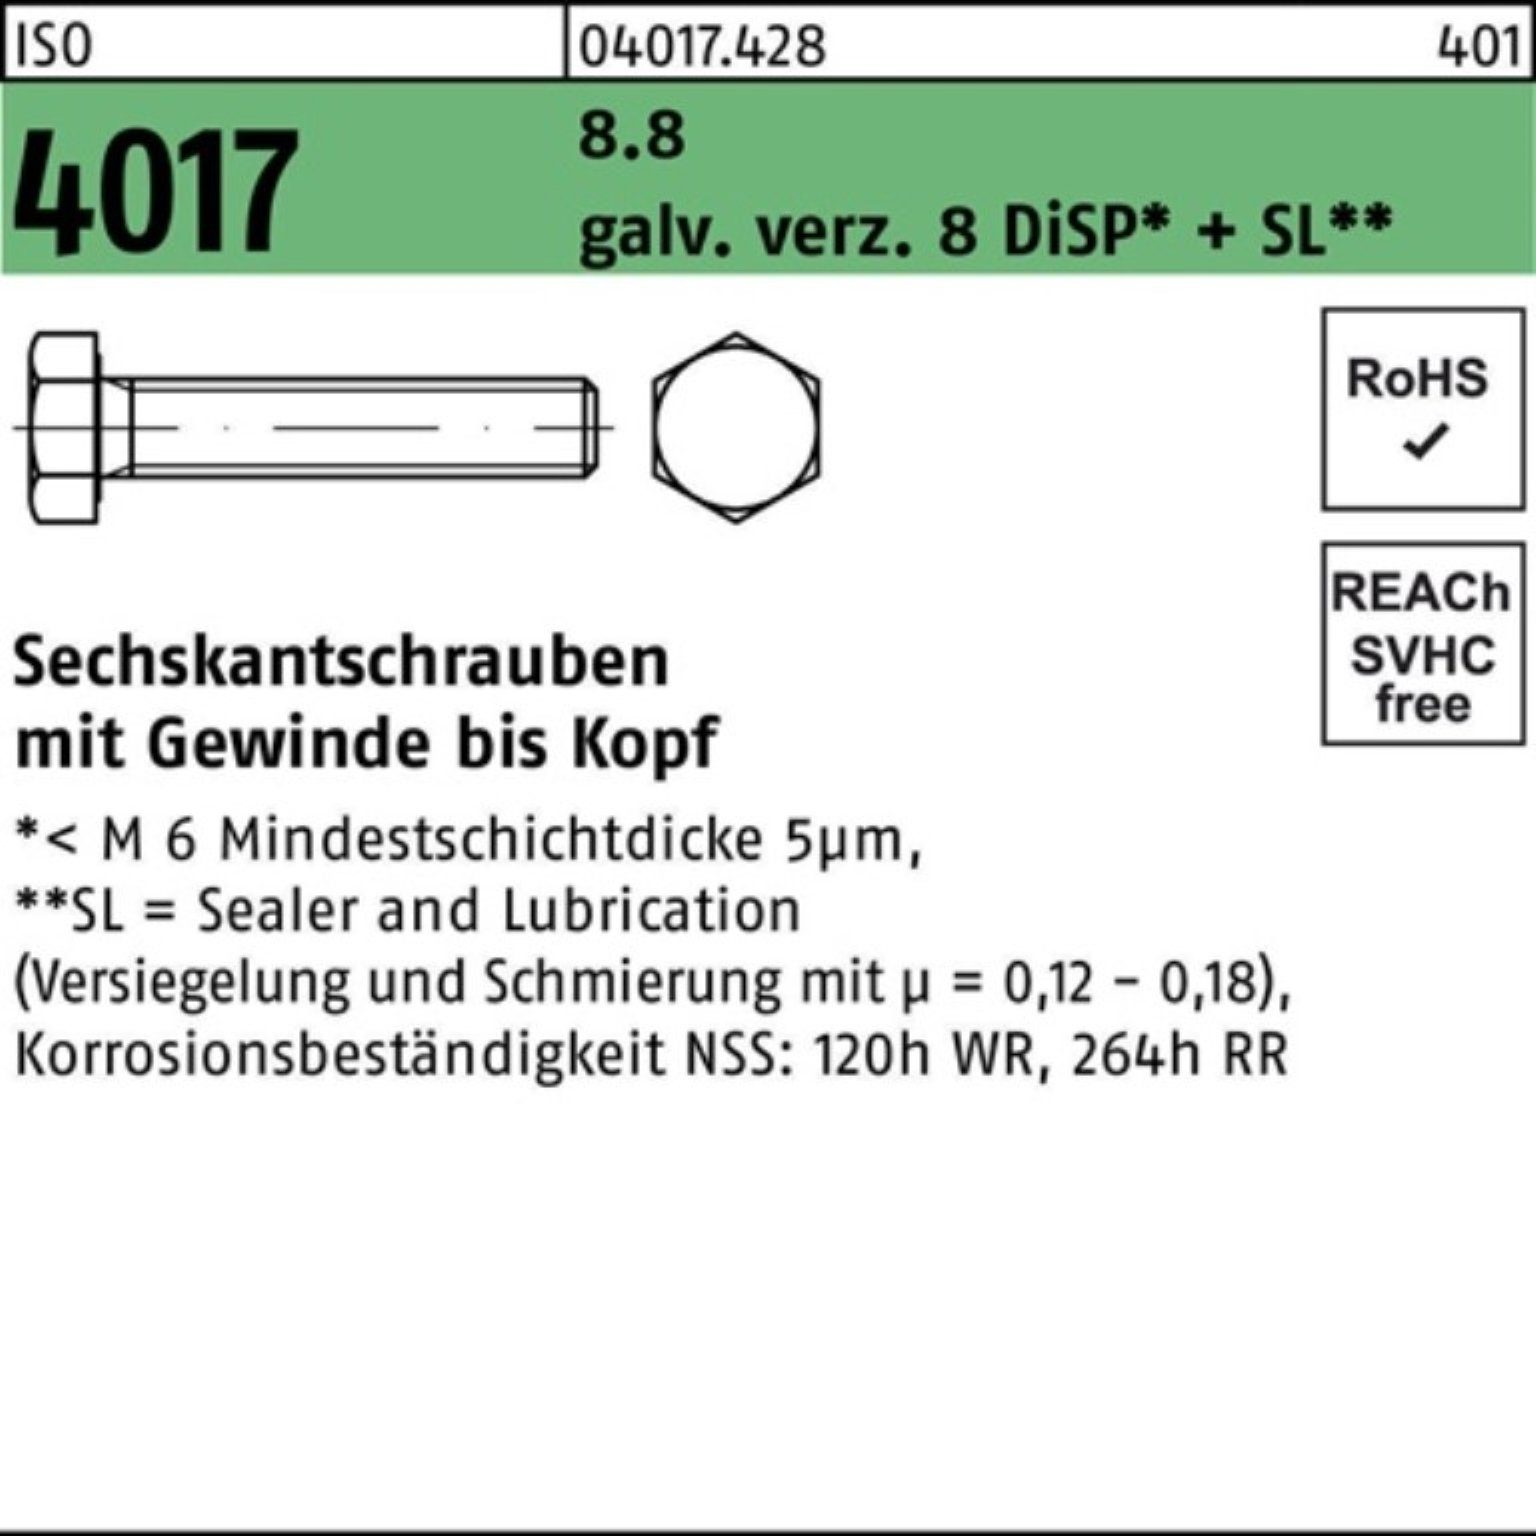 Bufab Sechskantschraube galv.verz. 500er 8 M4x Sechskantschraube 16 VG 8.8 4017 ISO DiSP+ Pack